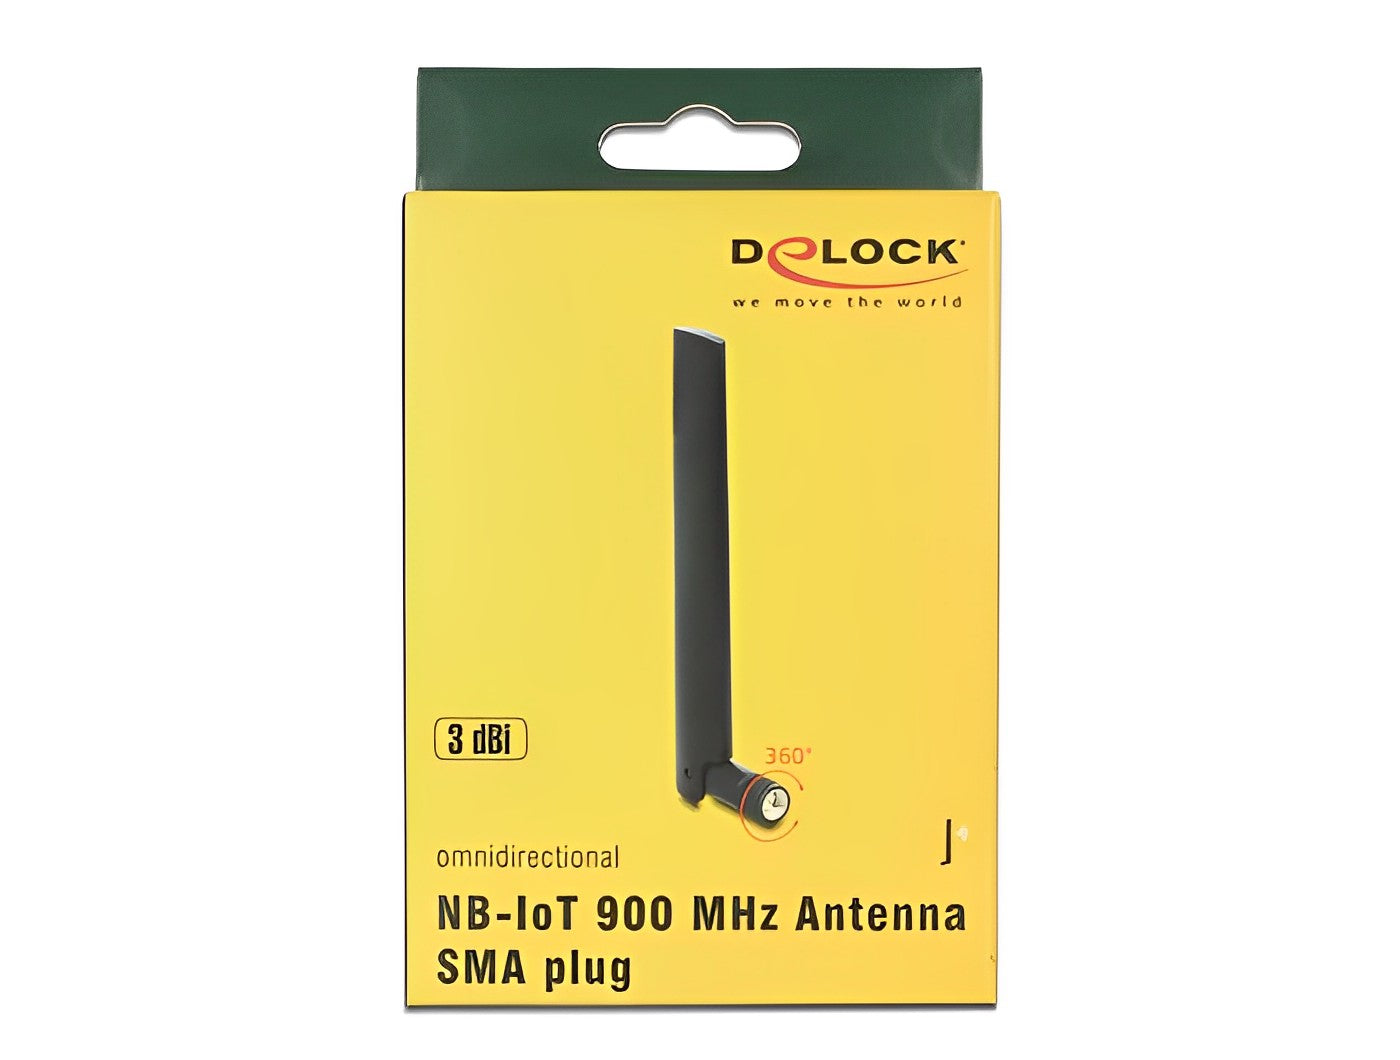 אנטנה כלל כיוונית NB-IoT 900 MHz 3 dBi פנימית מחבר SMA plug - delock.israel